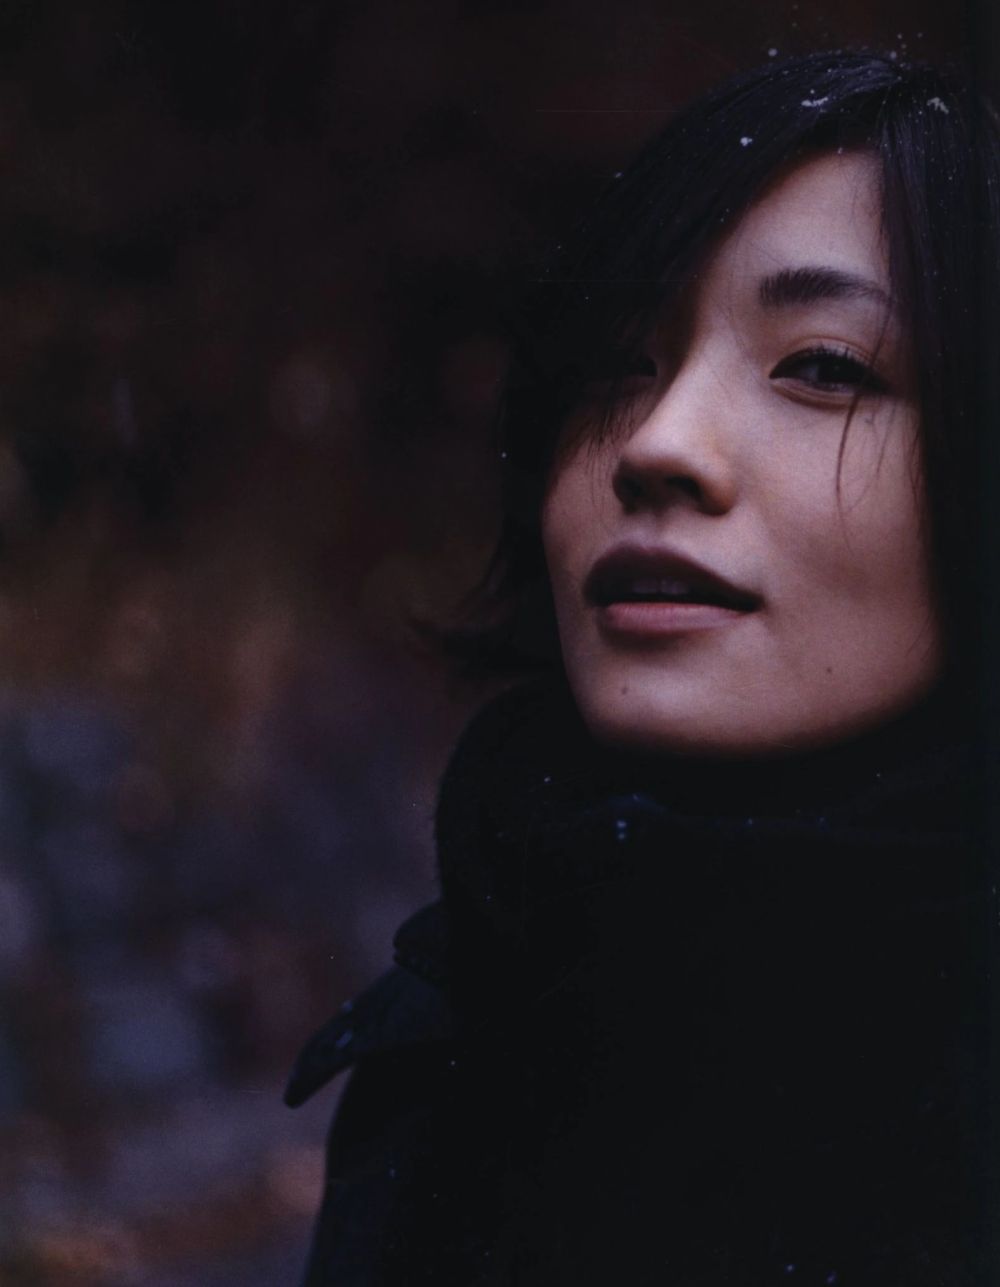 Mari Hoshino Sexy and Hottest Photos , Latest Pics